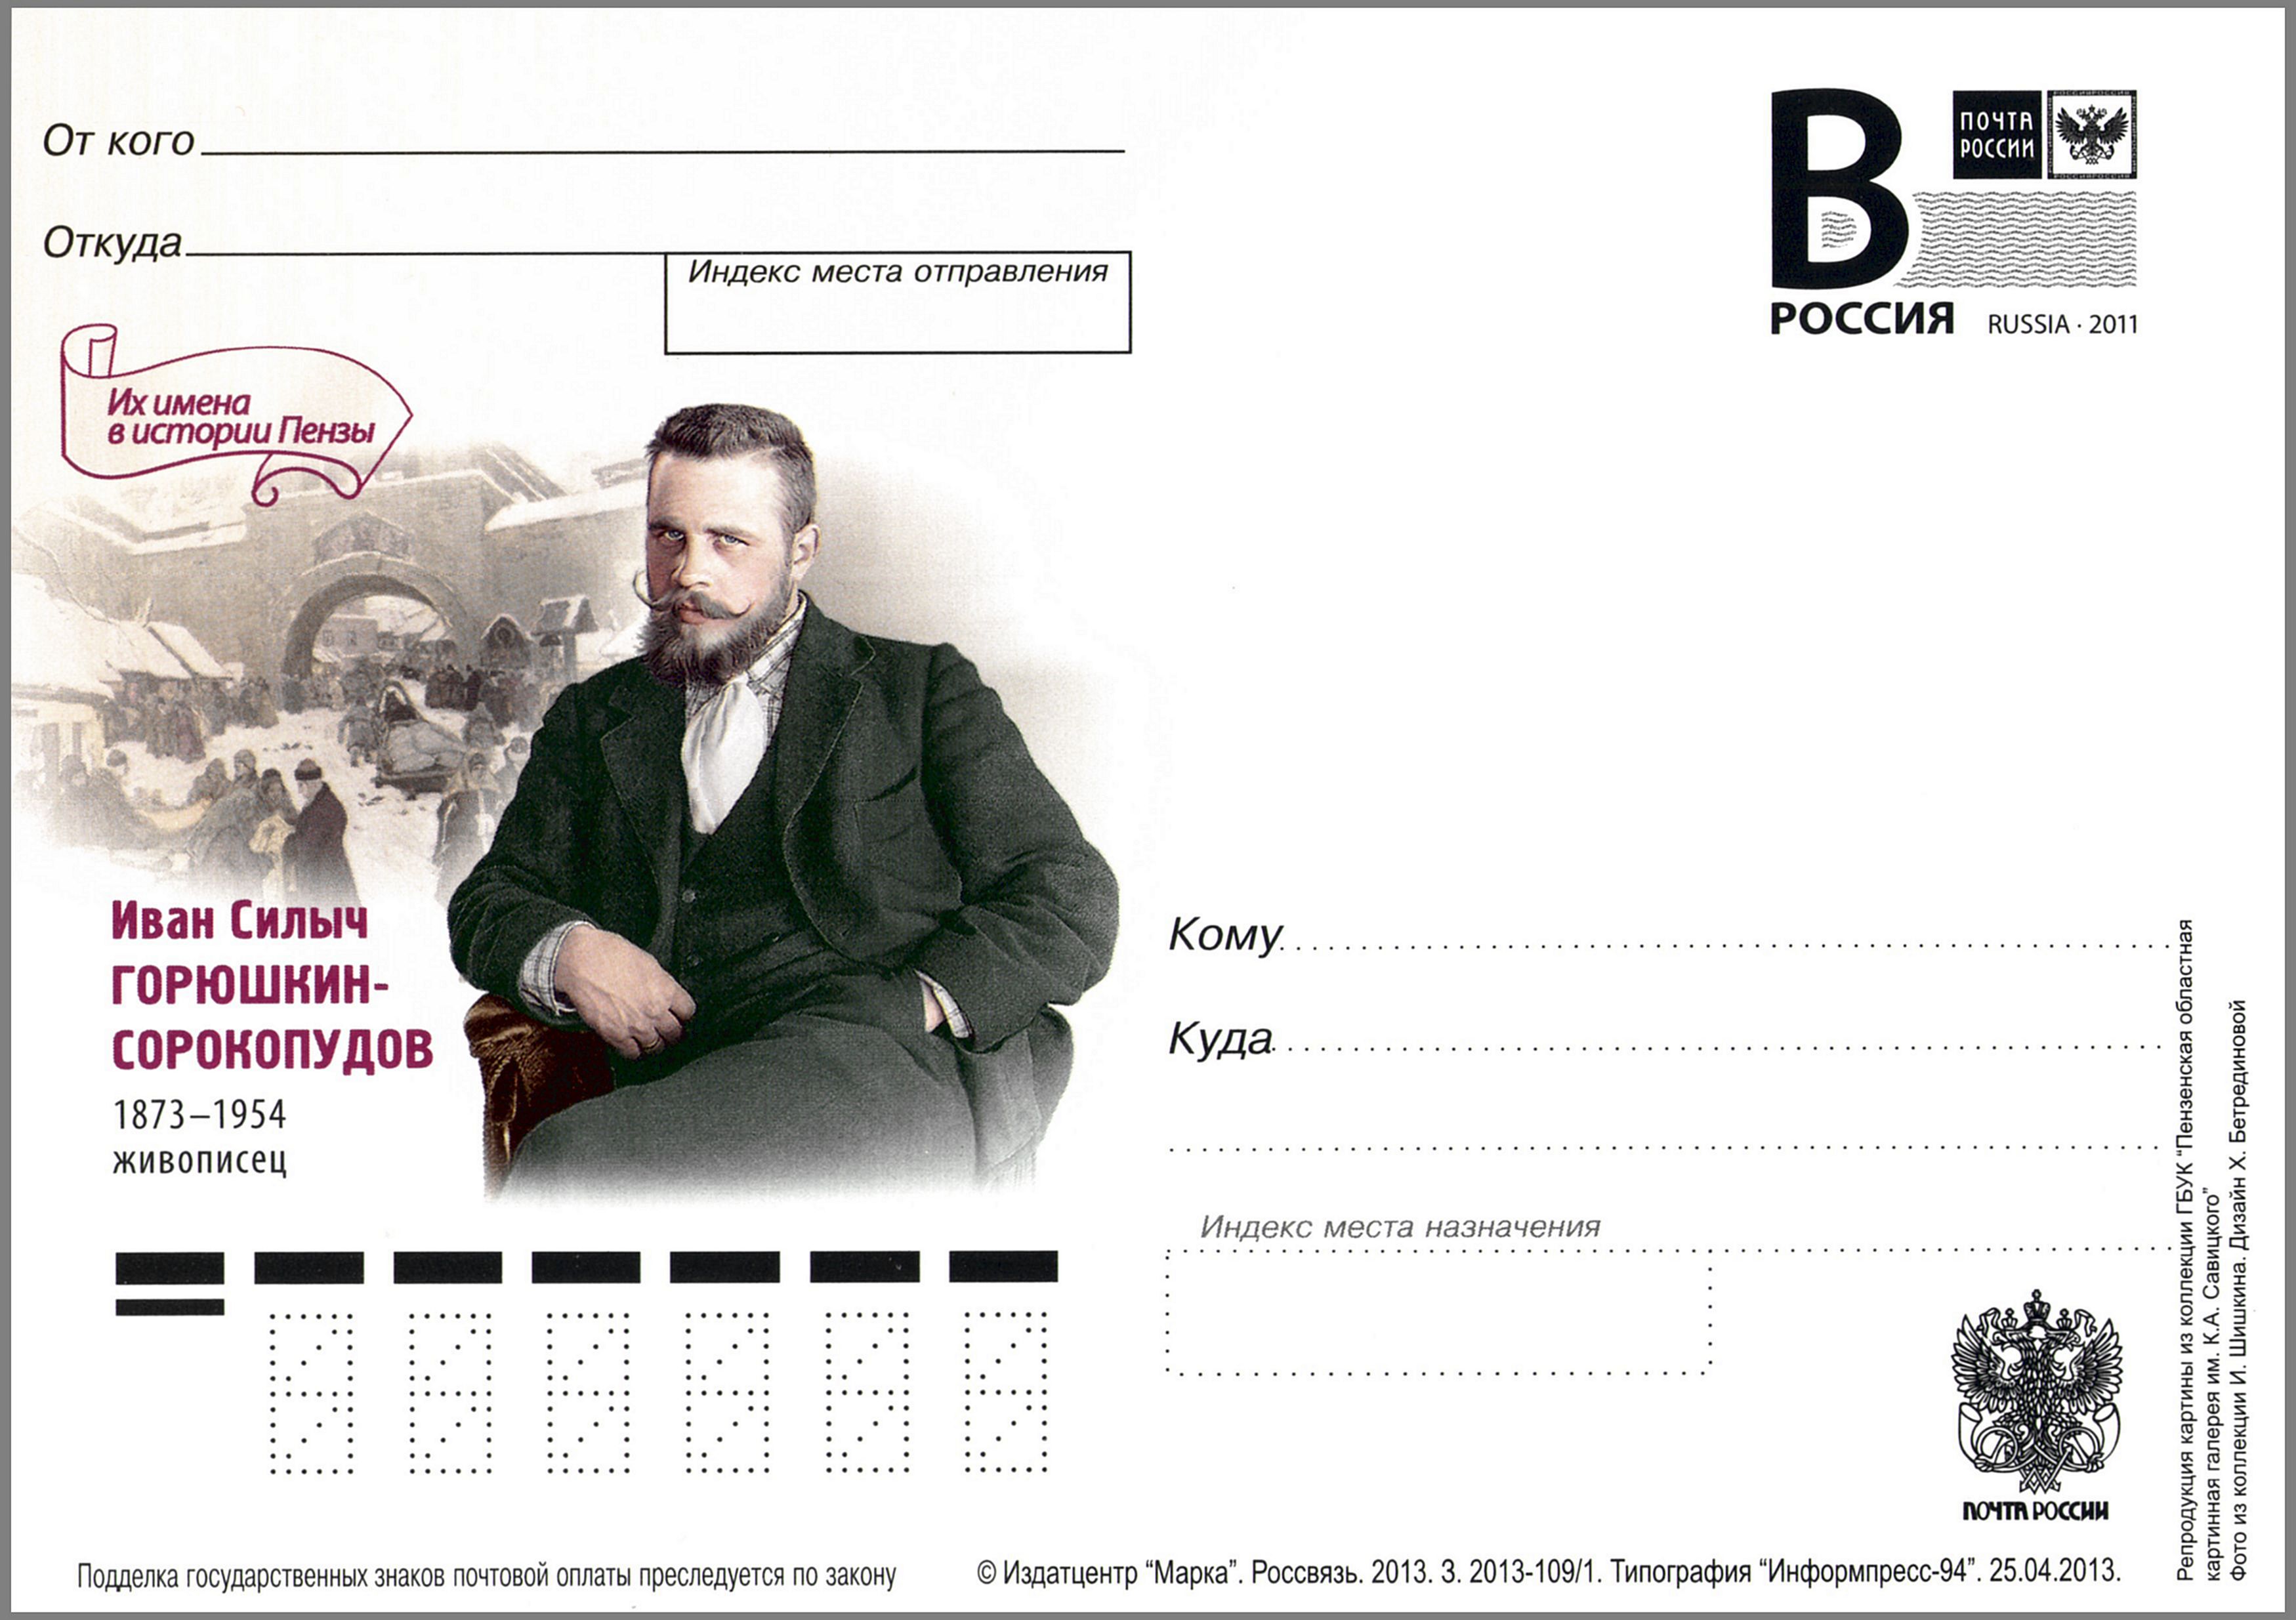 Ivan Goryushkin-Sorokopudov Postal card Russia 2013